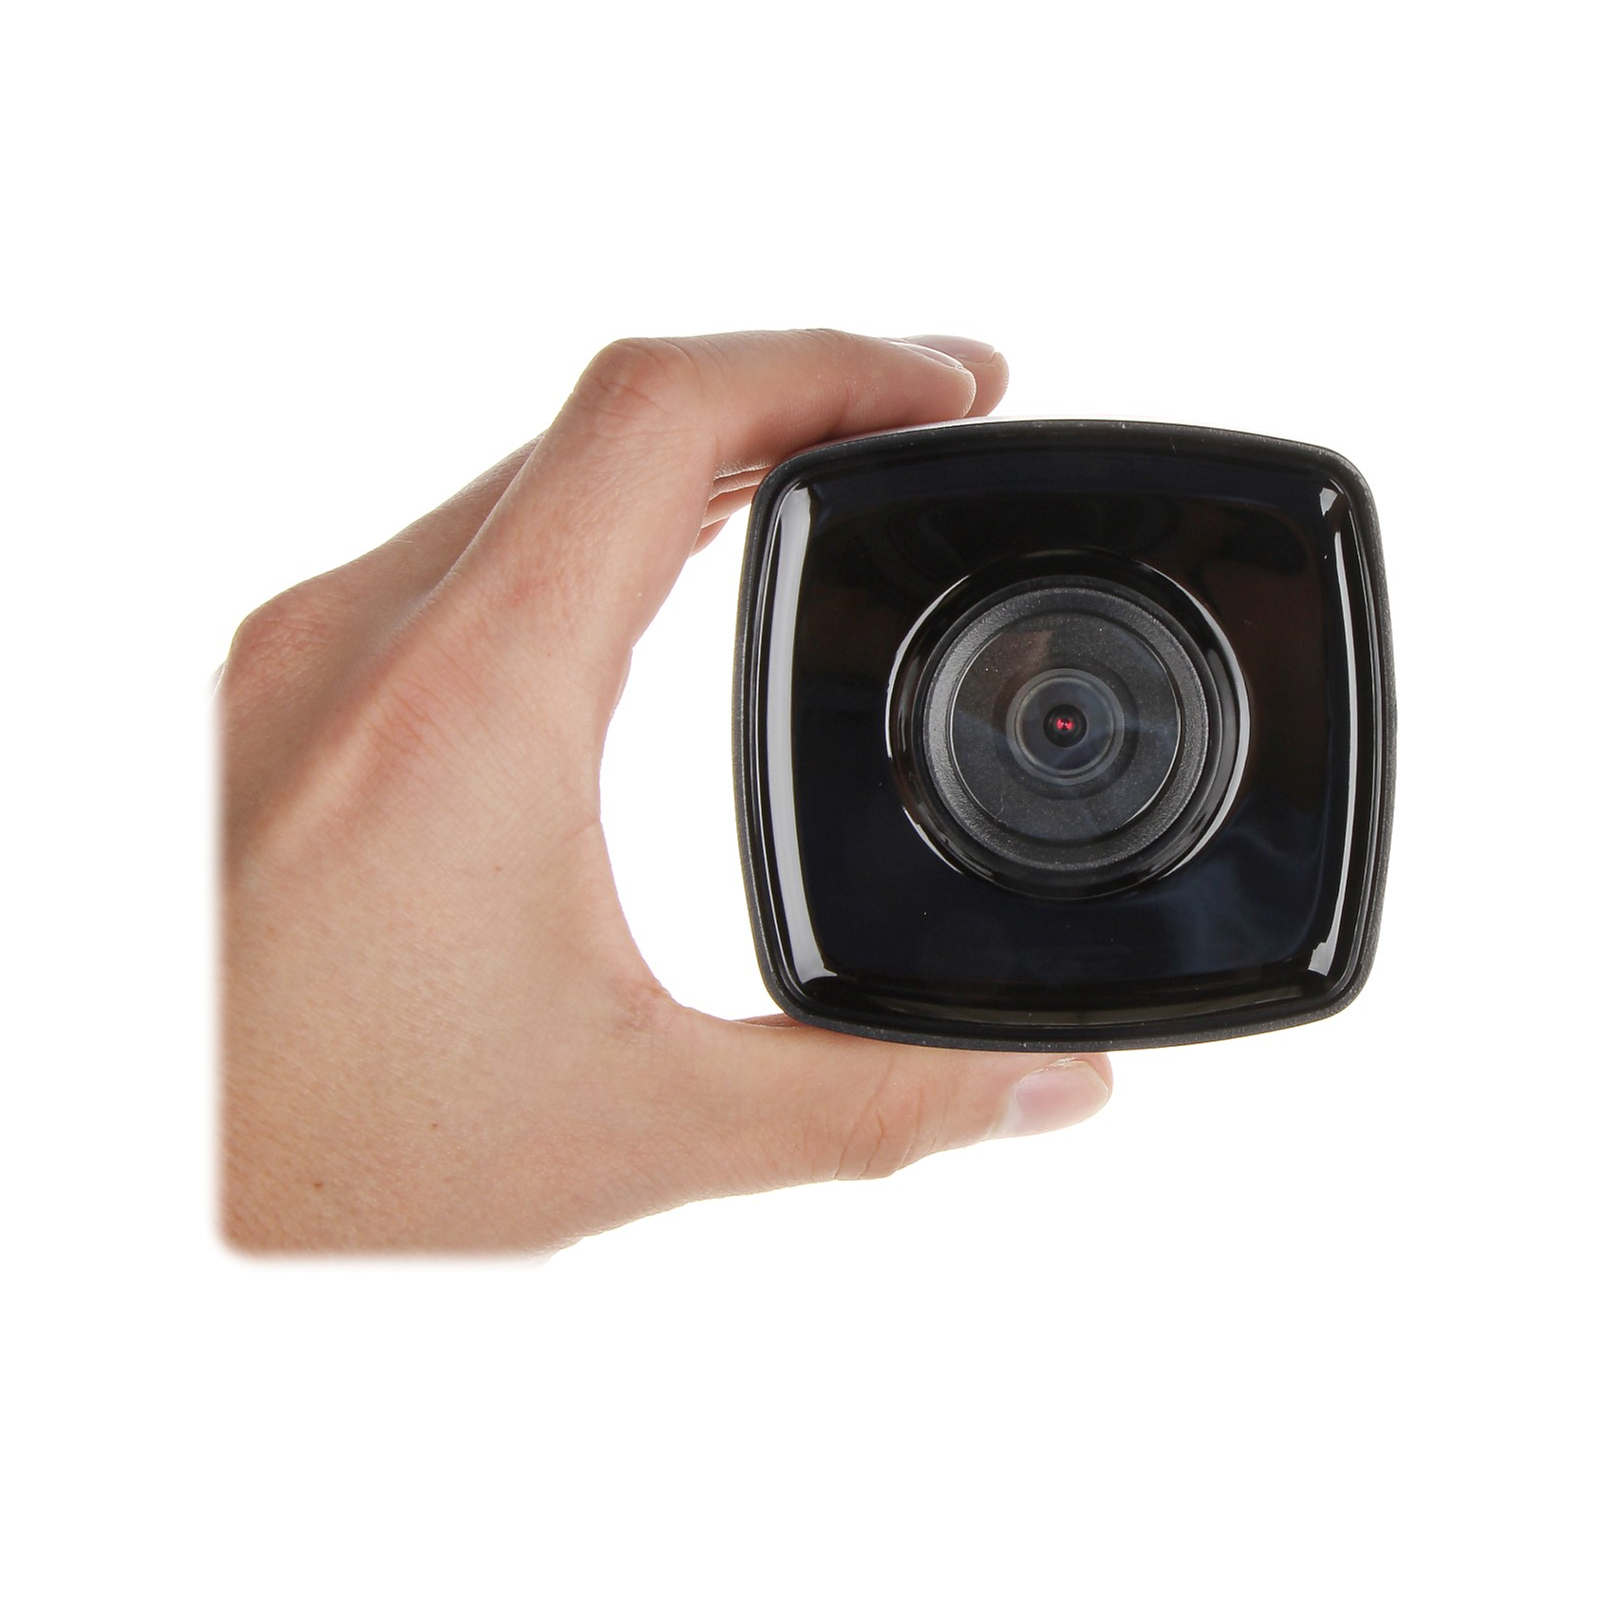 Камера видеонаблюдения Hikvision DS-2CE17D0T-IT3F(C)(2.8) изображение 3